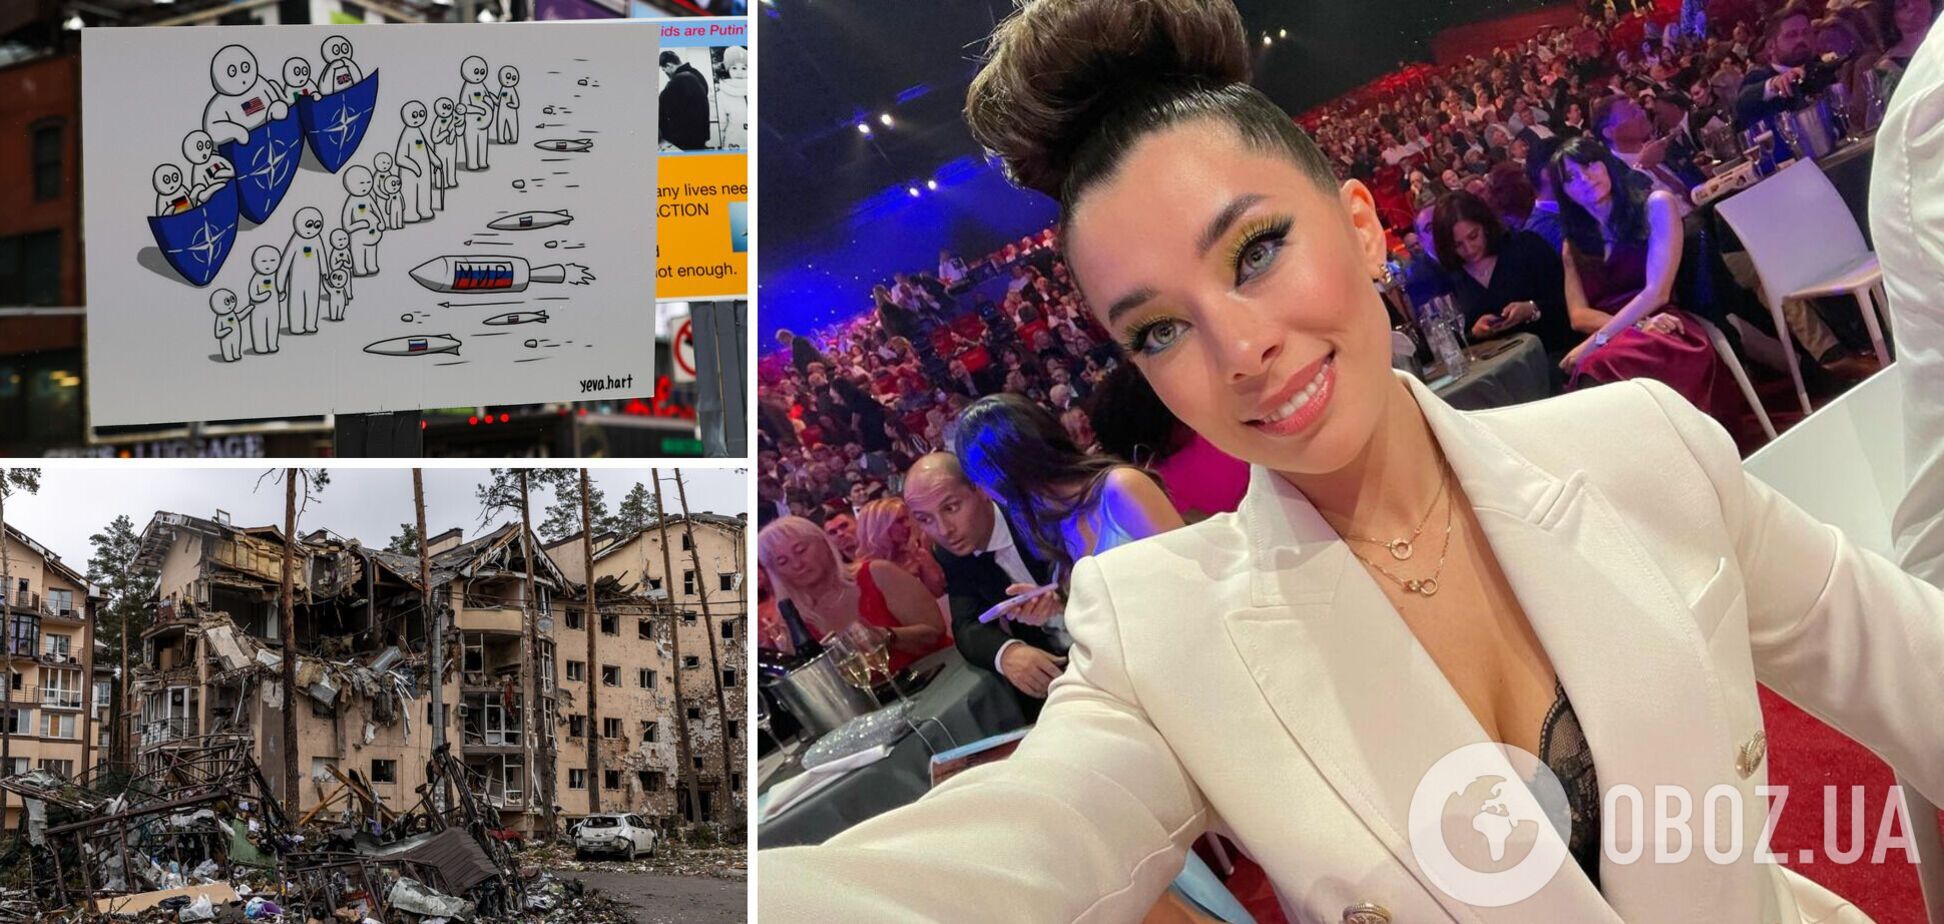 'Мисс Украина Вселенная' Анна Неплях растрогала зал речью об Украине на конкурсе красоты в Бельгии